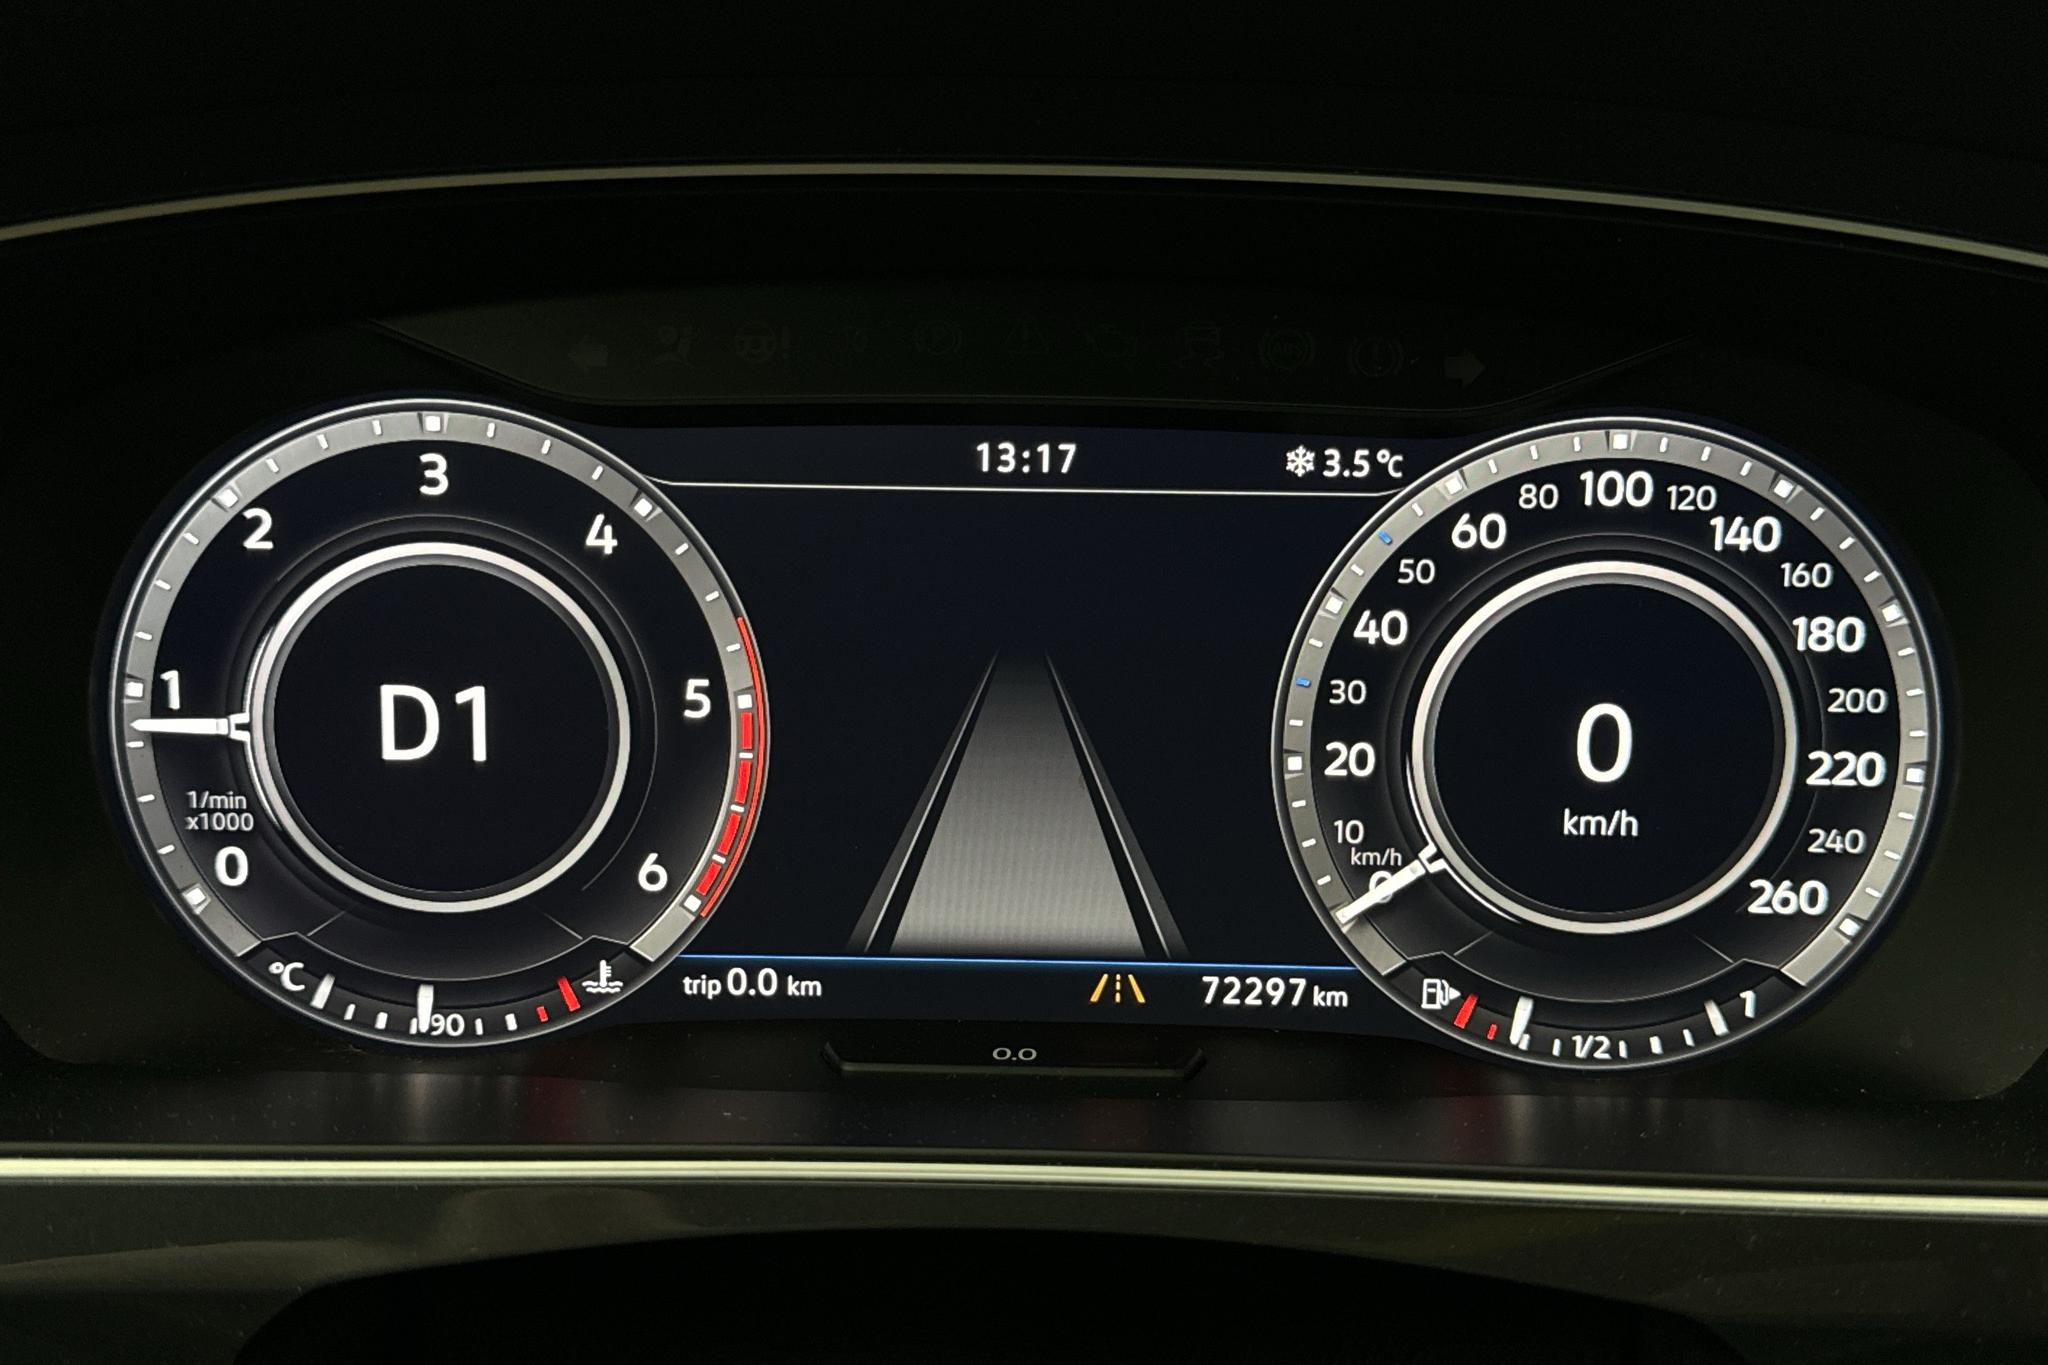 VW Tiguan 2.0 TDI 4MOTION (190hk) - 72 300 km - Automatic - gray - 2019